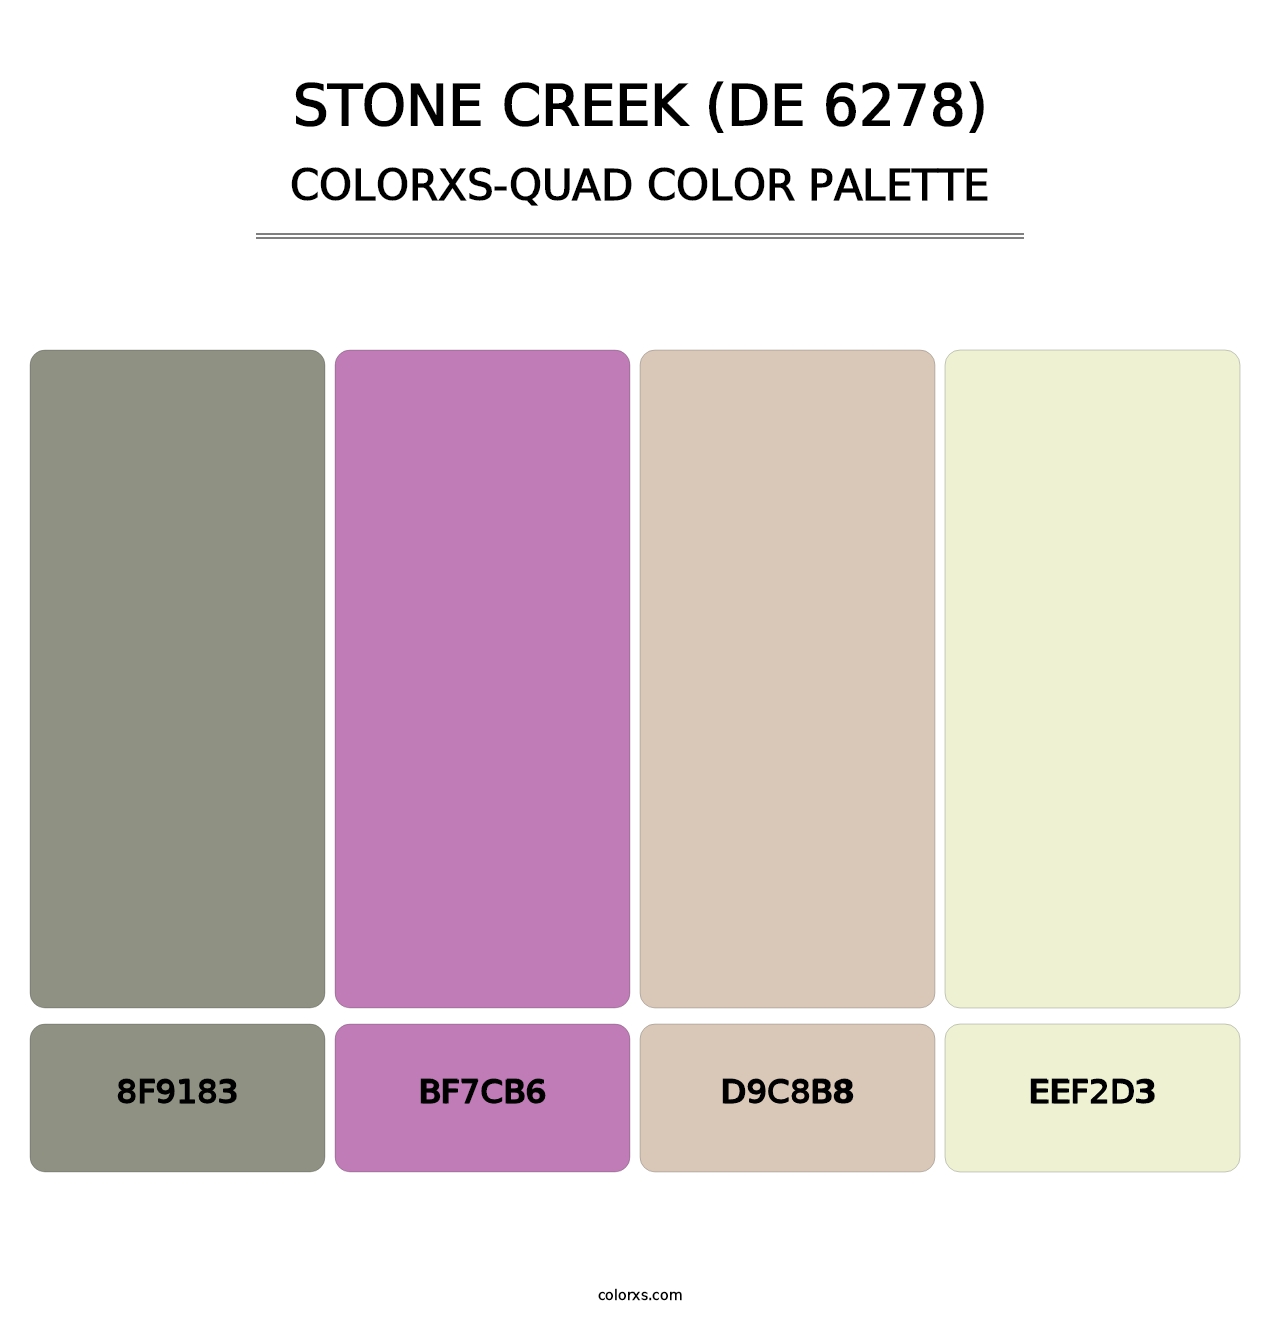 Stone Creek (DE 6278) - Colorxs Quad Palette